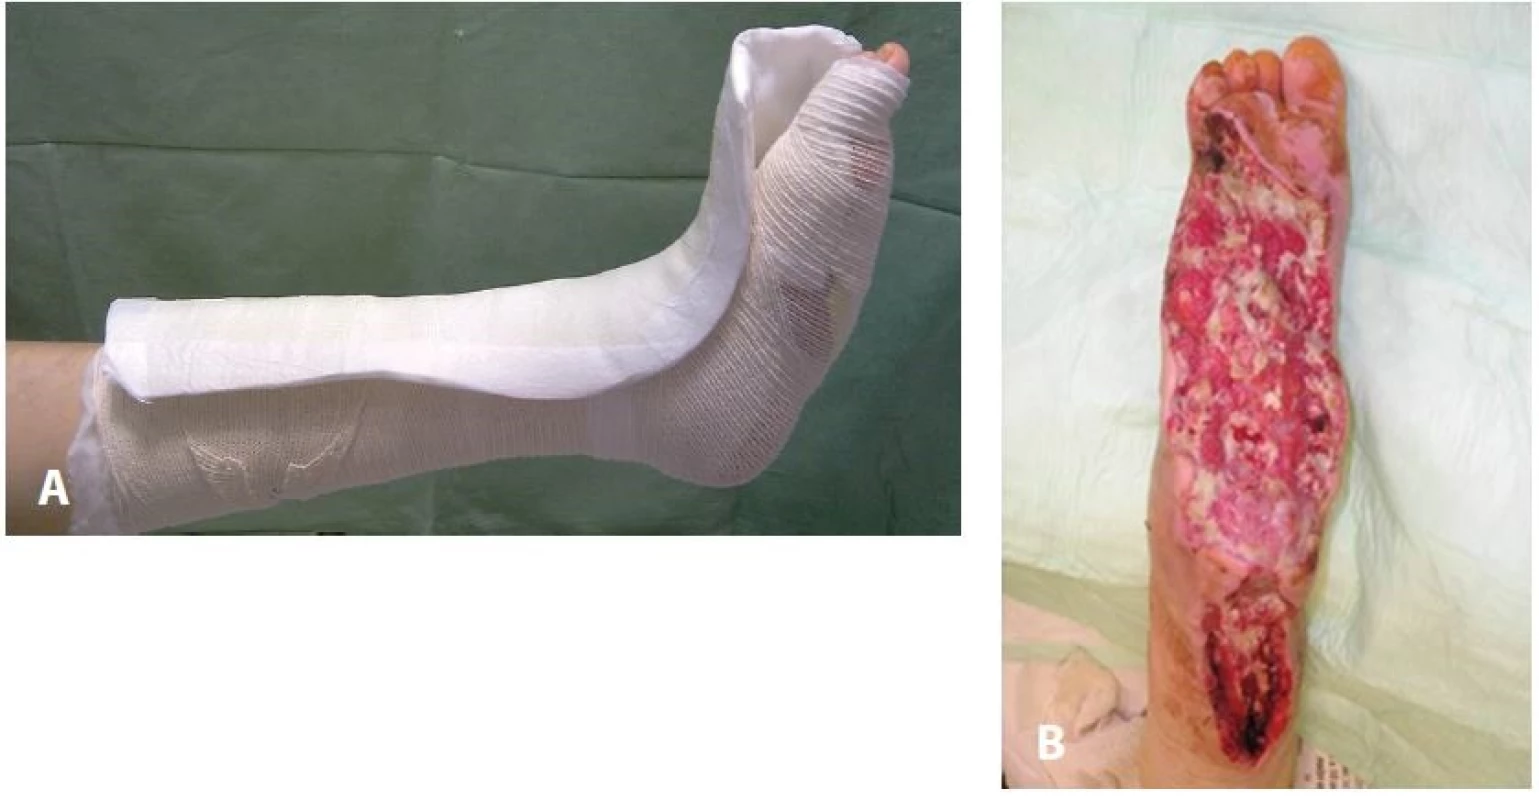 Pretibiální L-dlaha (A), často aplikovaná u rozsáhlých ztrátových postiženích dolní končetiny (B)
Fig. 6: Pretibial removable contact L-splint (A) often applicated after extensive debridements and necrectomies of the diabetic foot (B)